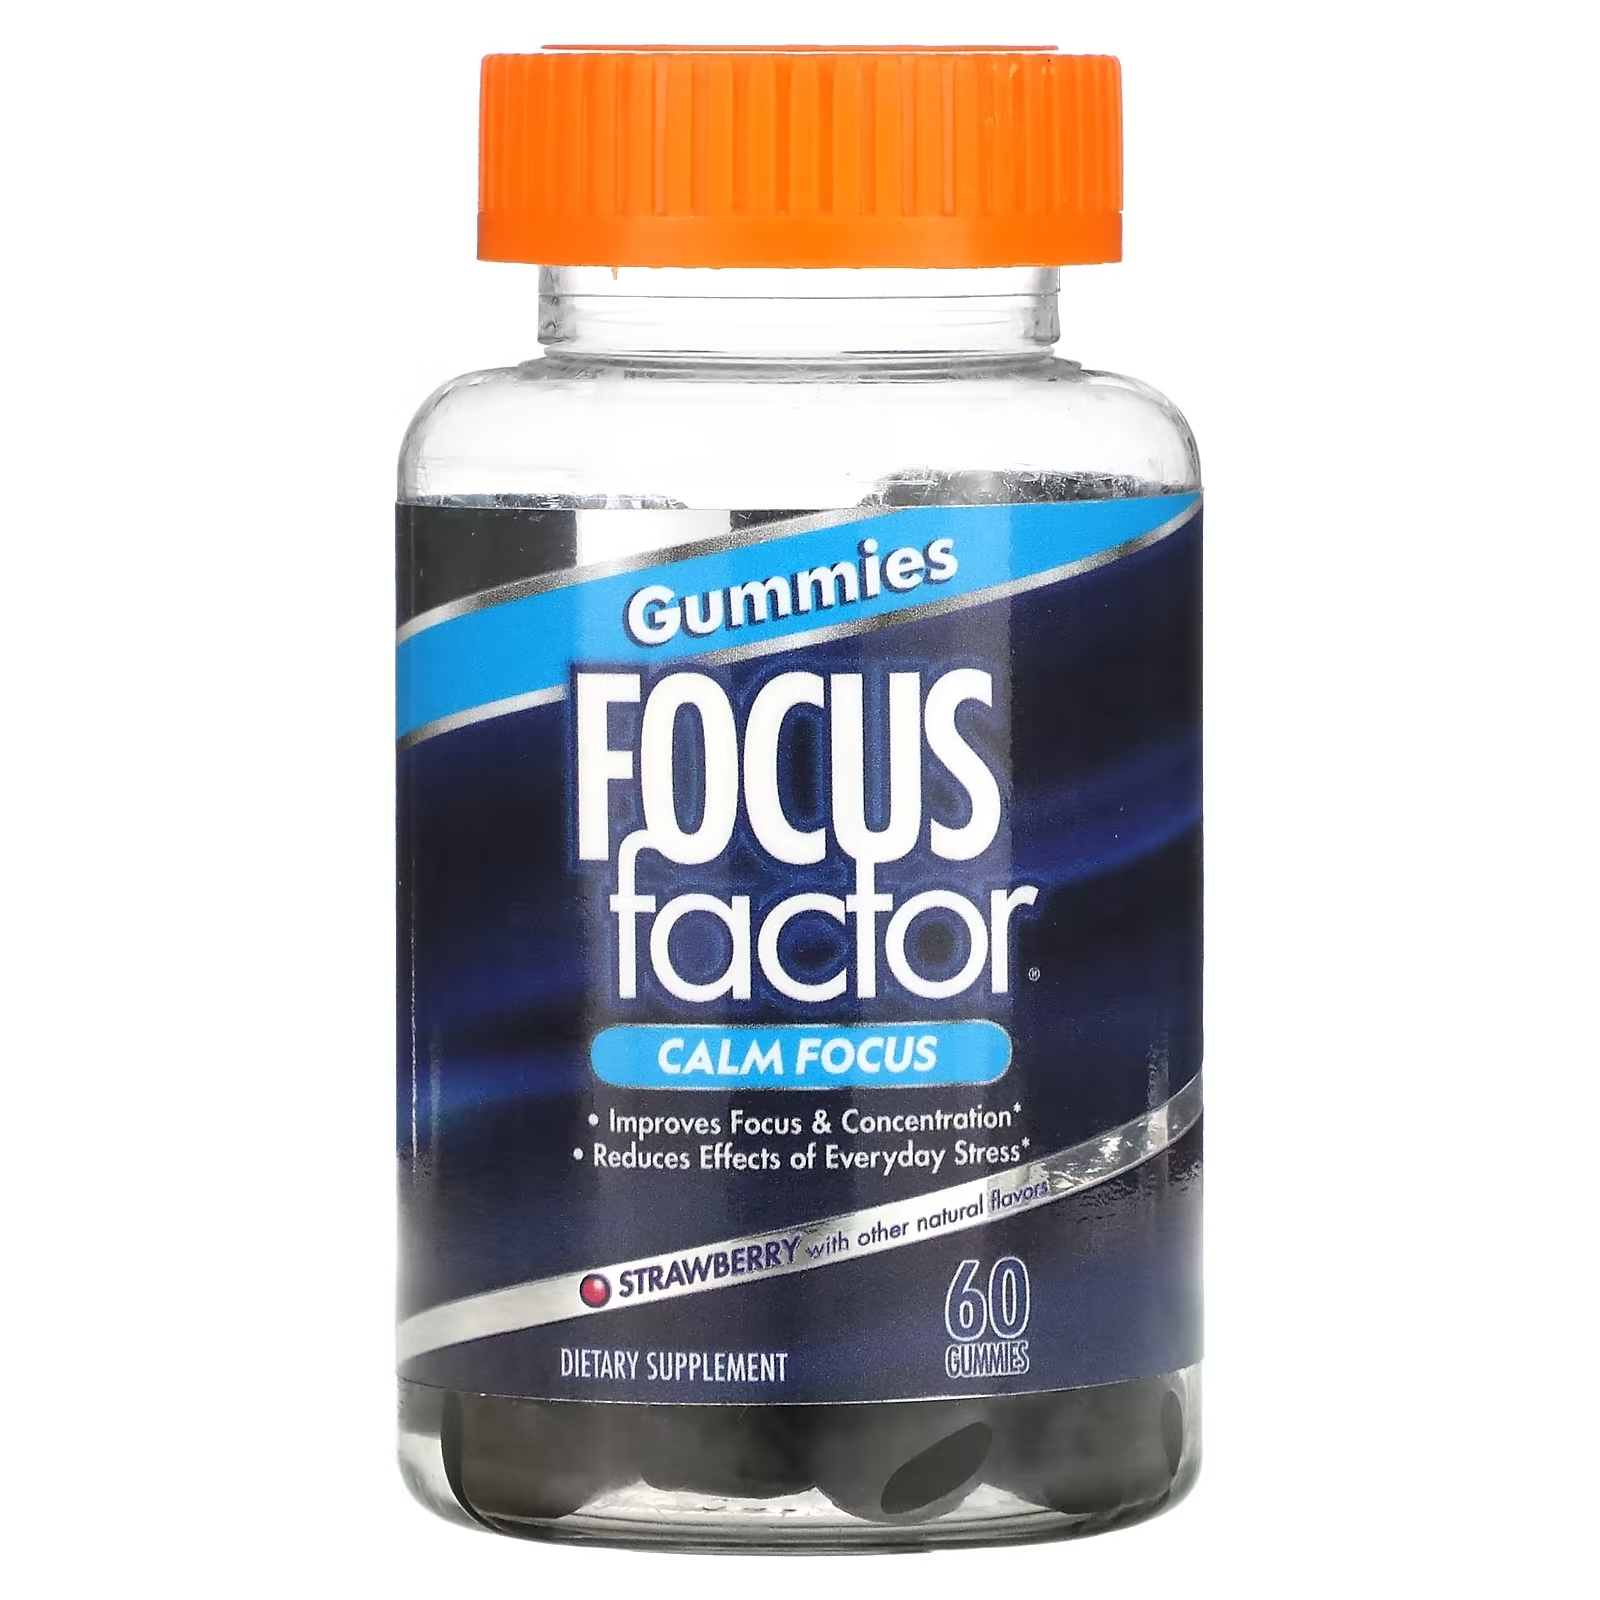 Focus Factor Calm Focus клубника, 60 жевательных таблеток focus factor питание для мозга 90 таблеток